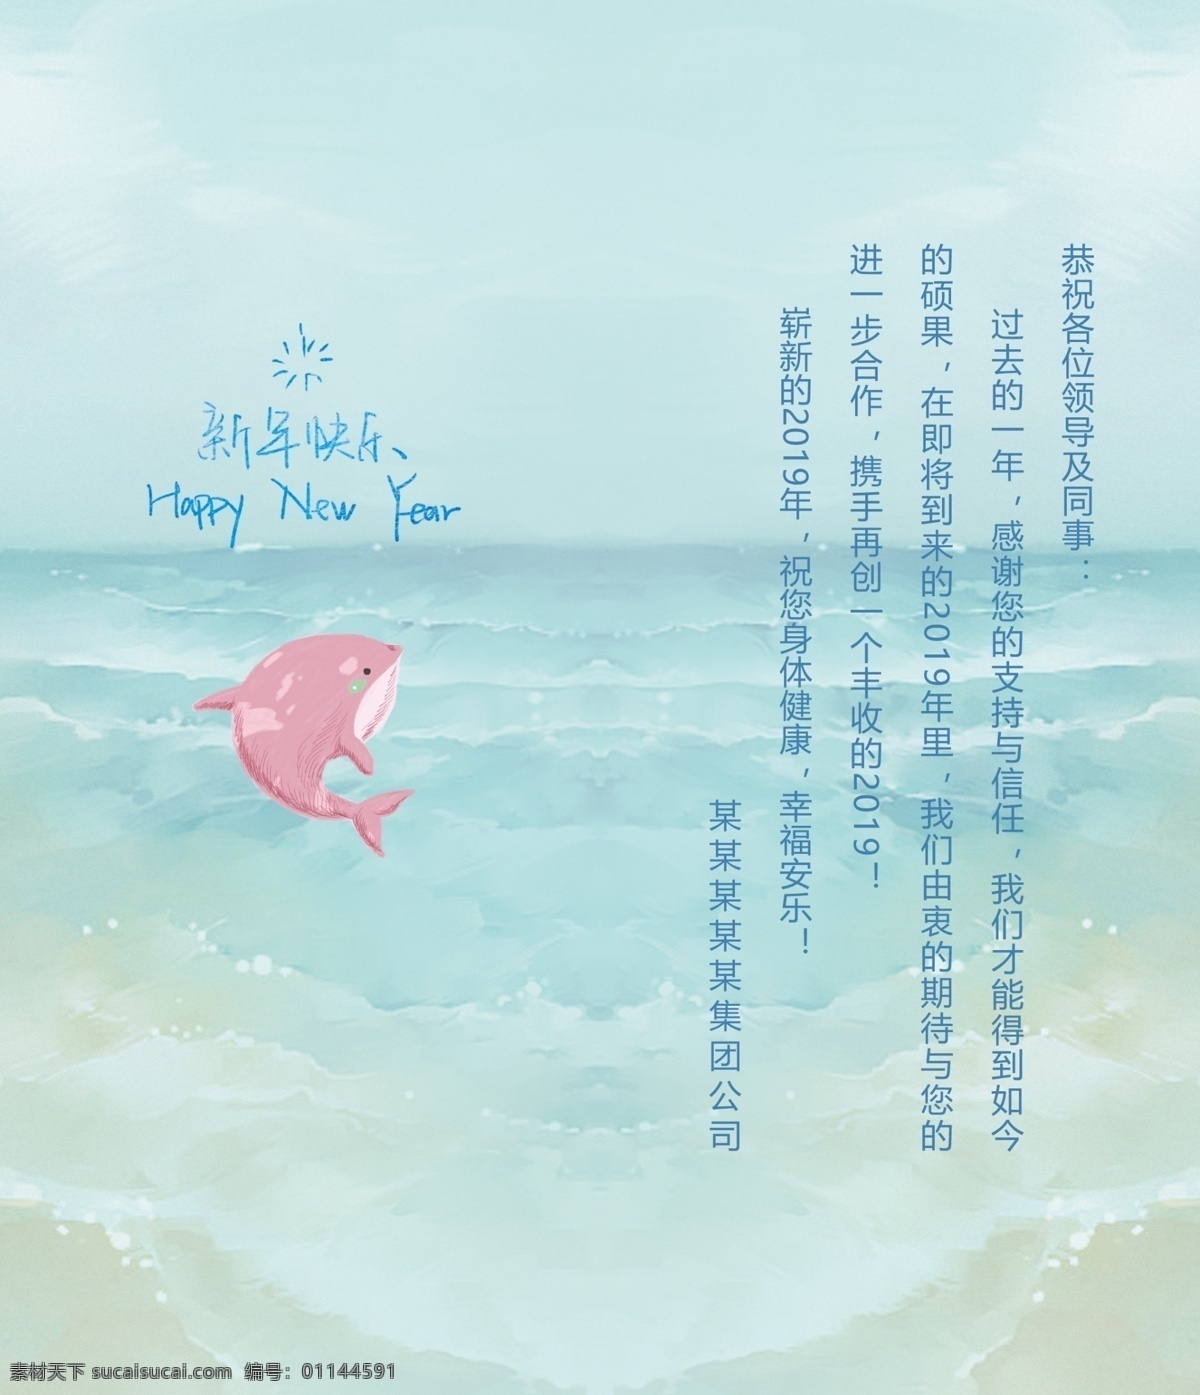 蓝色 大海 海豚 新年贺卡 贺卡 新年快乐 春节贺卡 春节祝福 蓝色贺卡